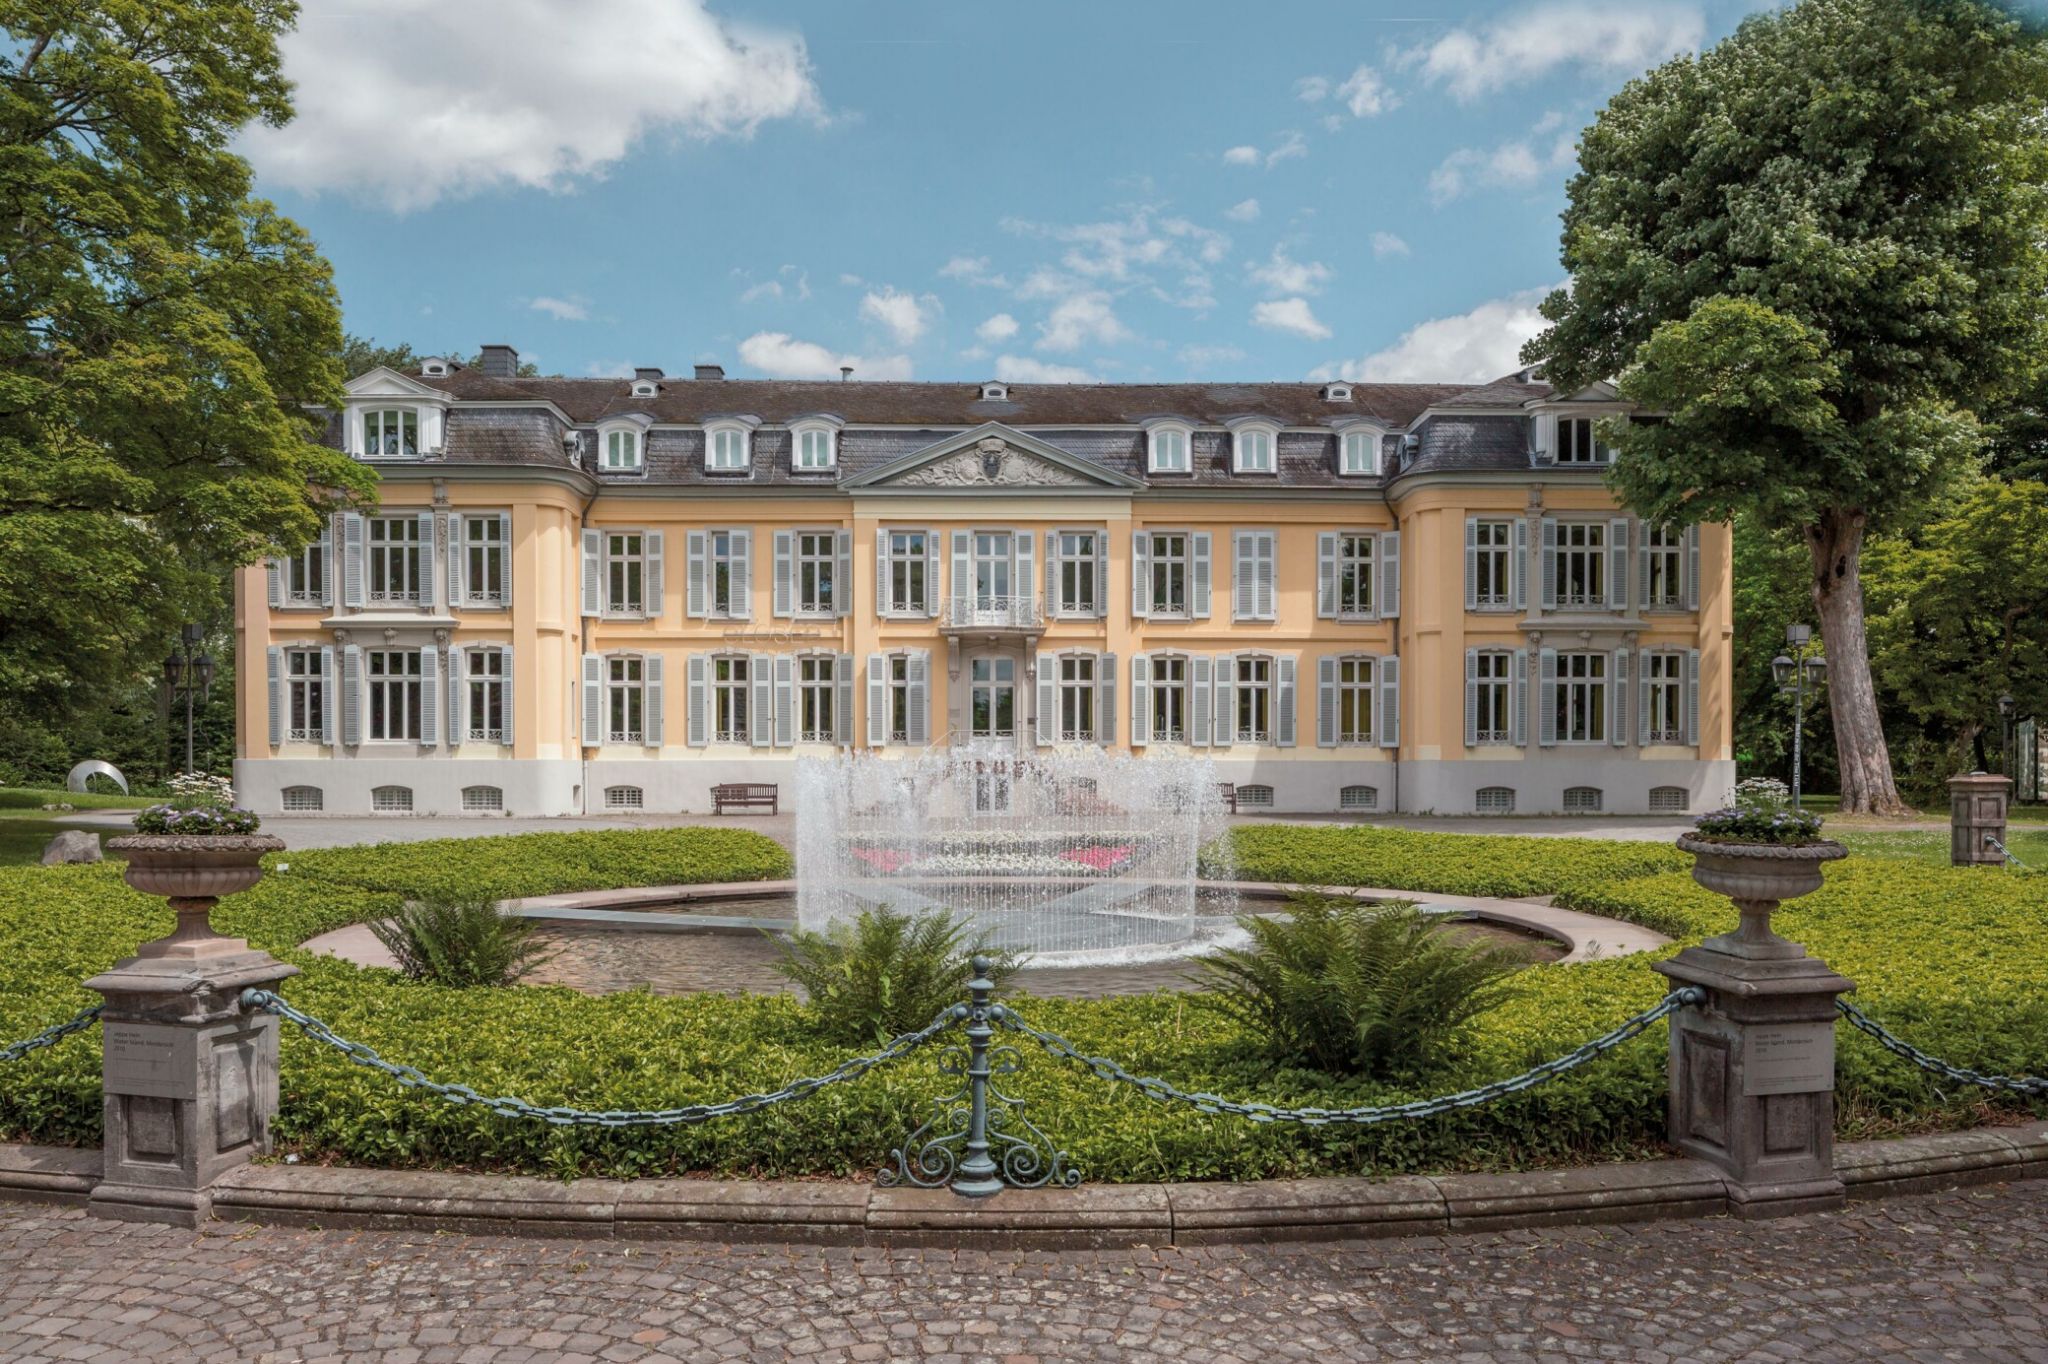 Landpartie Schloss Morsbroich 2020